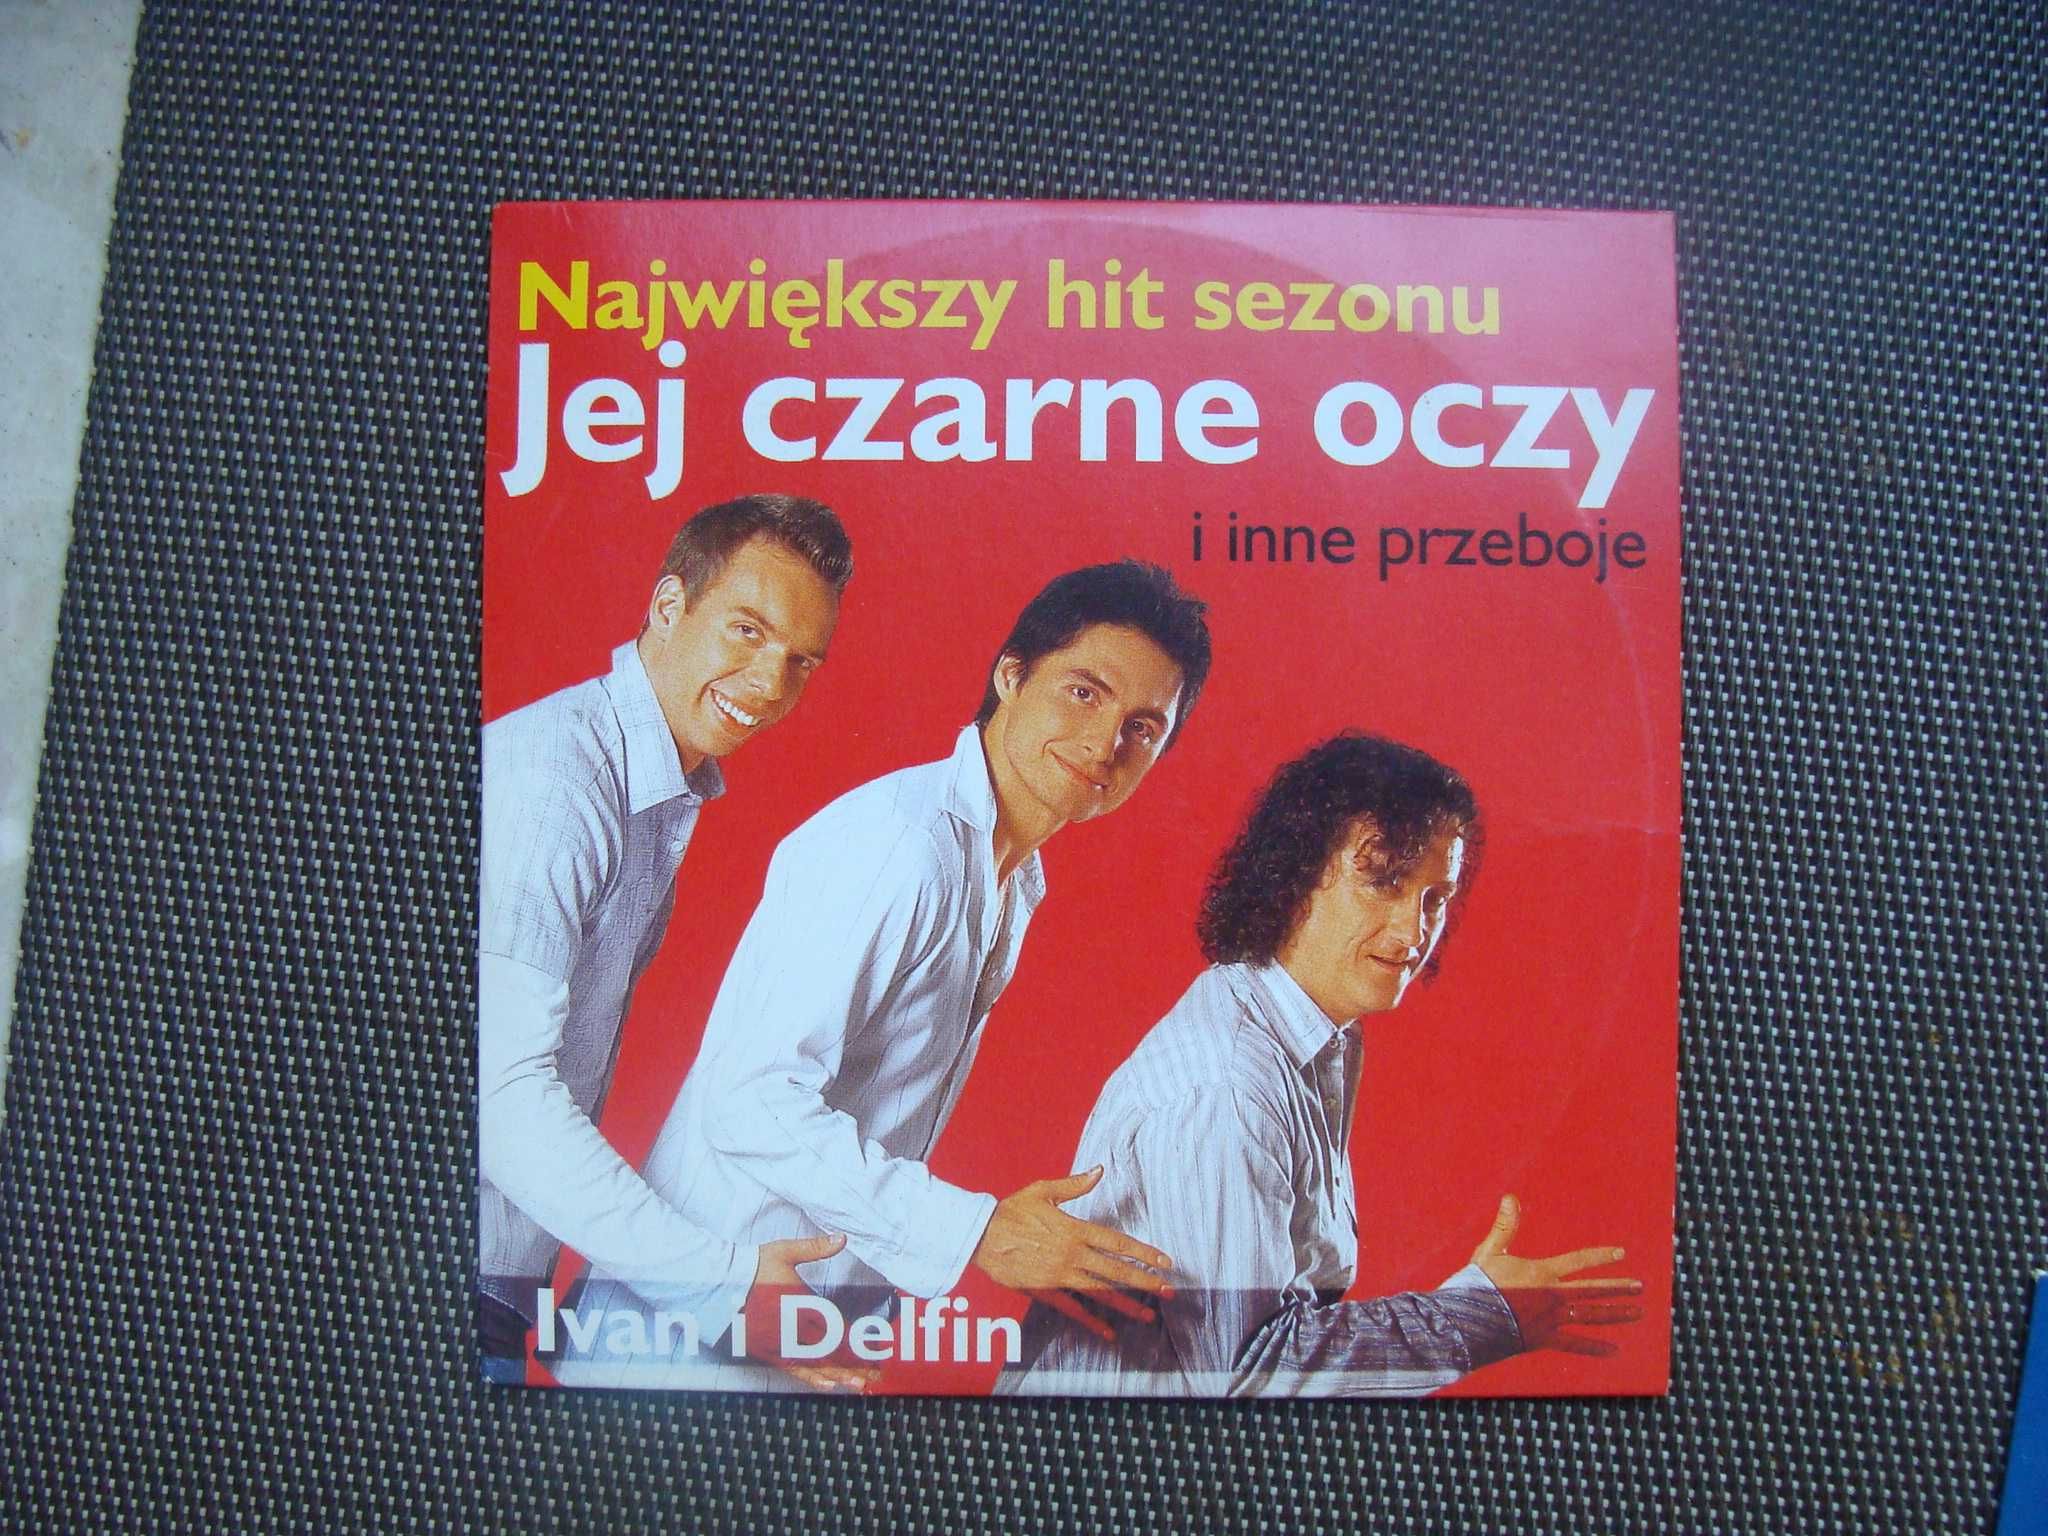 3 płytki CD z gazet - polscy wykonawcy